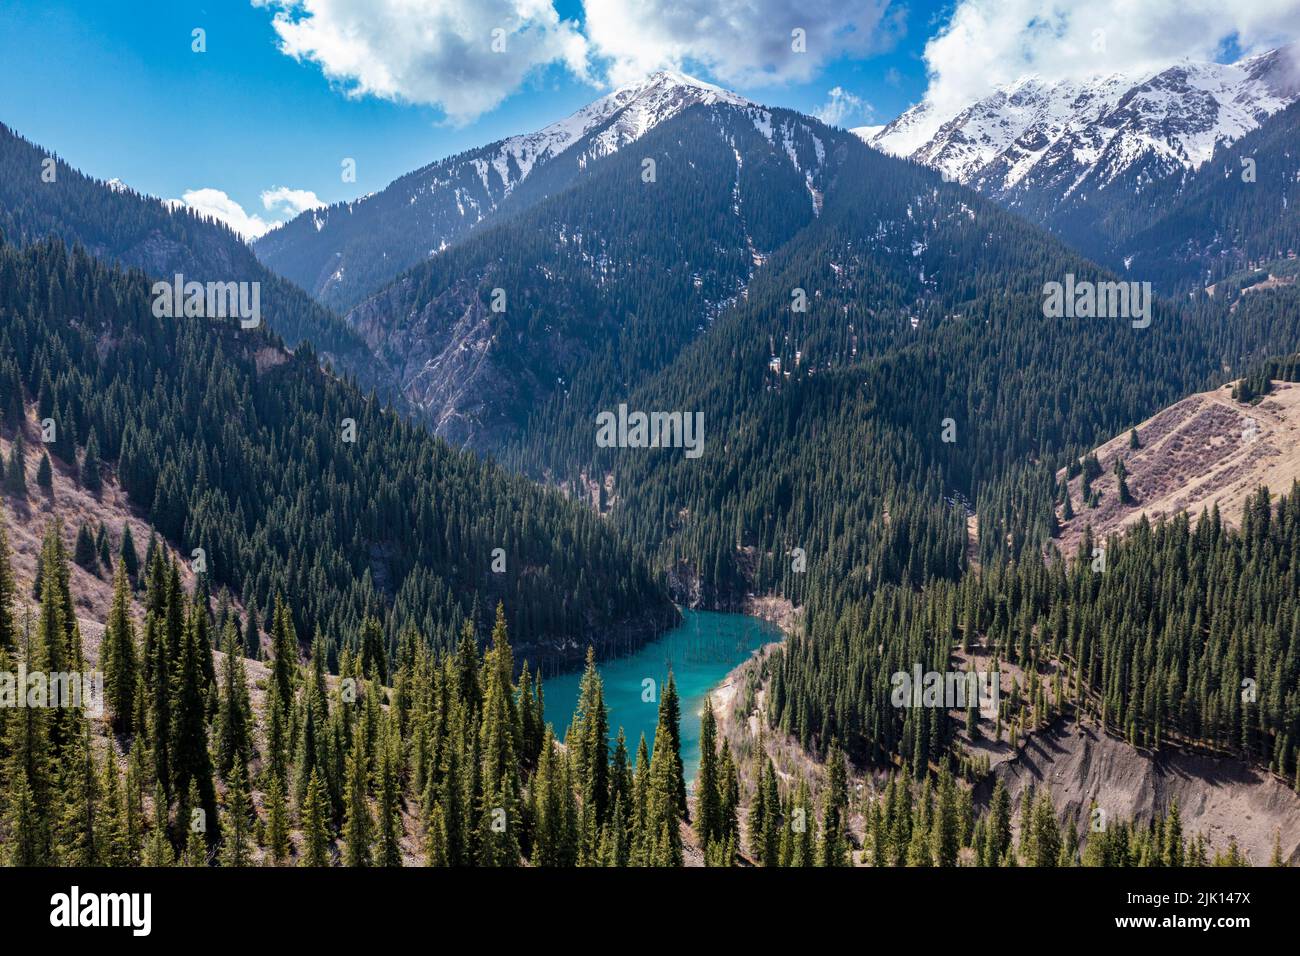 Aérienne du lac Kaindy avec ses arbres morts, parc national des lacs Kolsay, montagnes Tian Shan, Kazakhstan, Asie centrale, Asie Banque D'Images